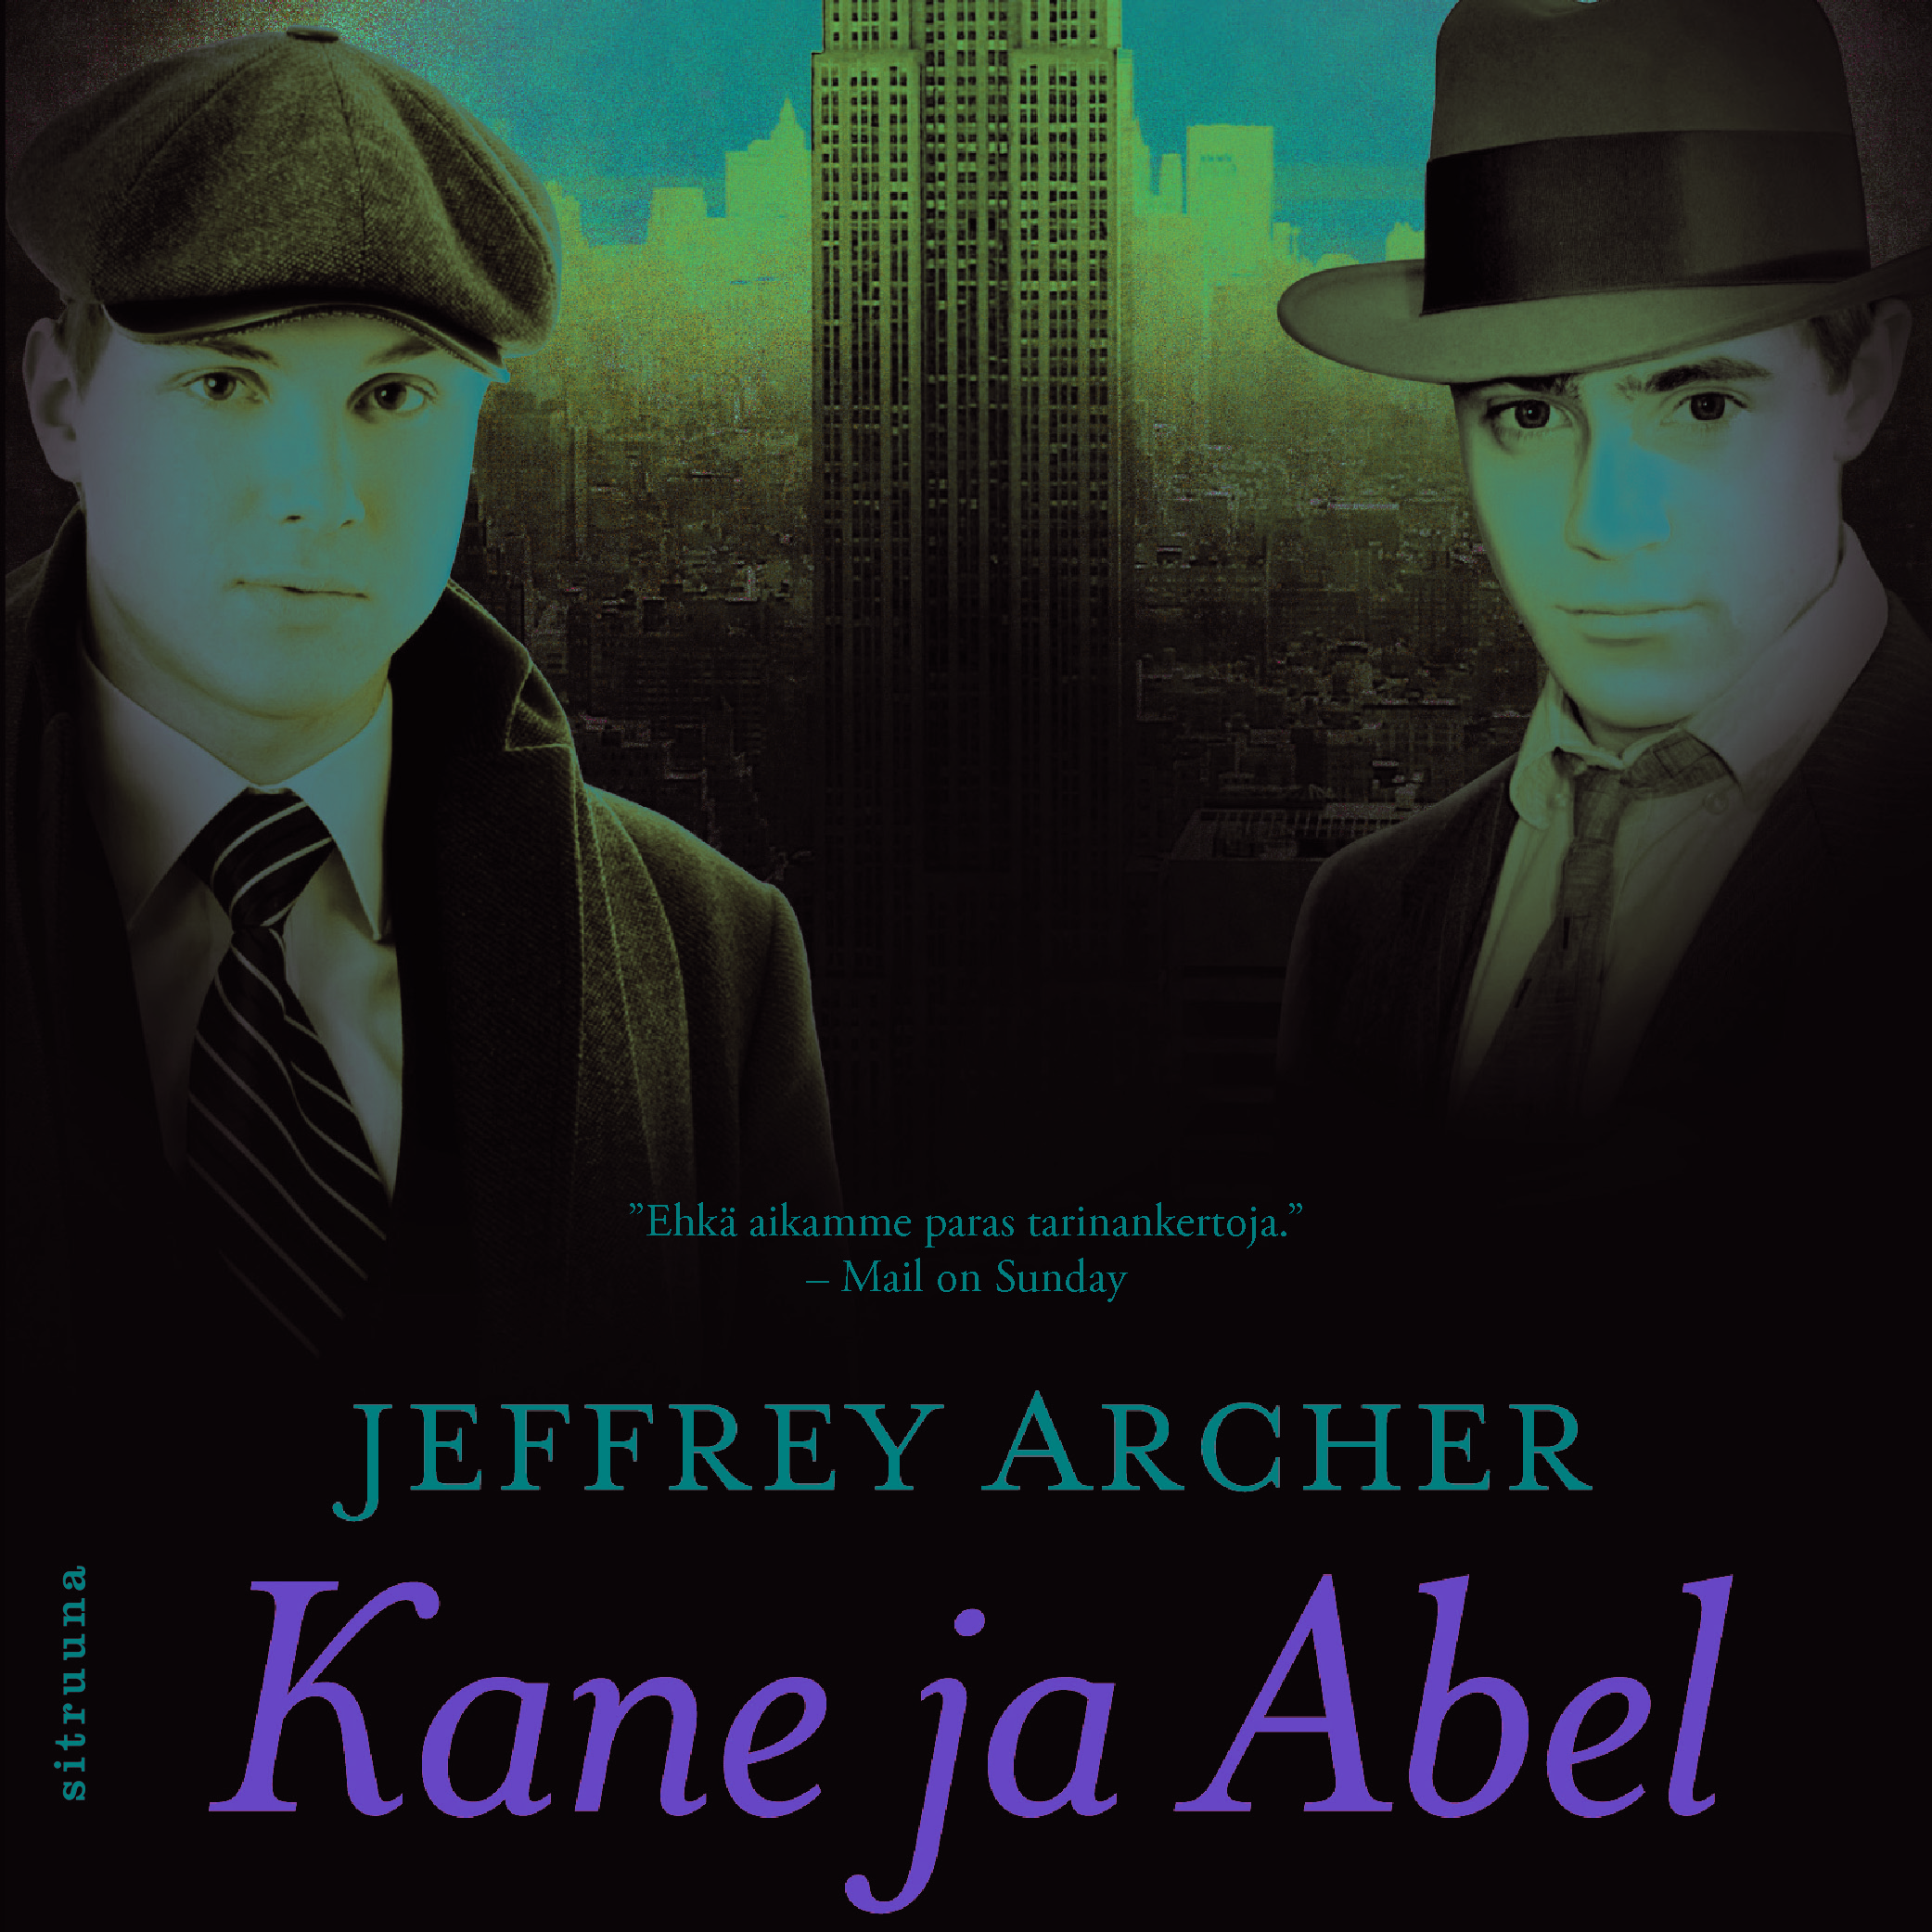 Archer, Jeffrey - Kane ja Abel, äänikirja